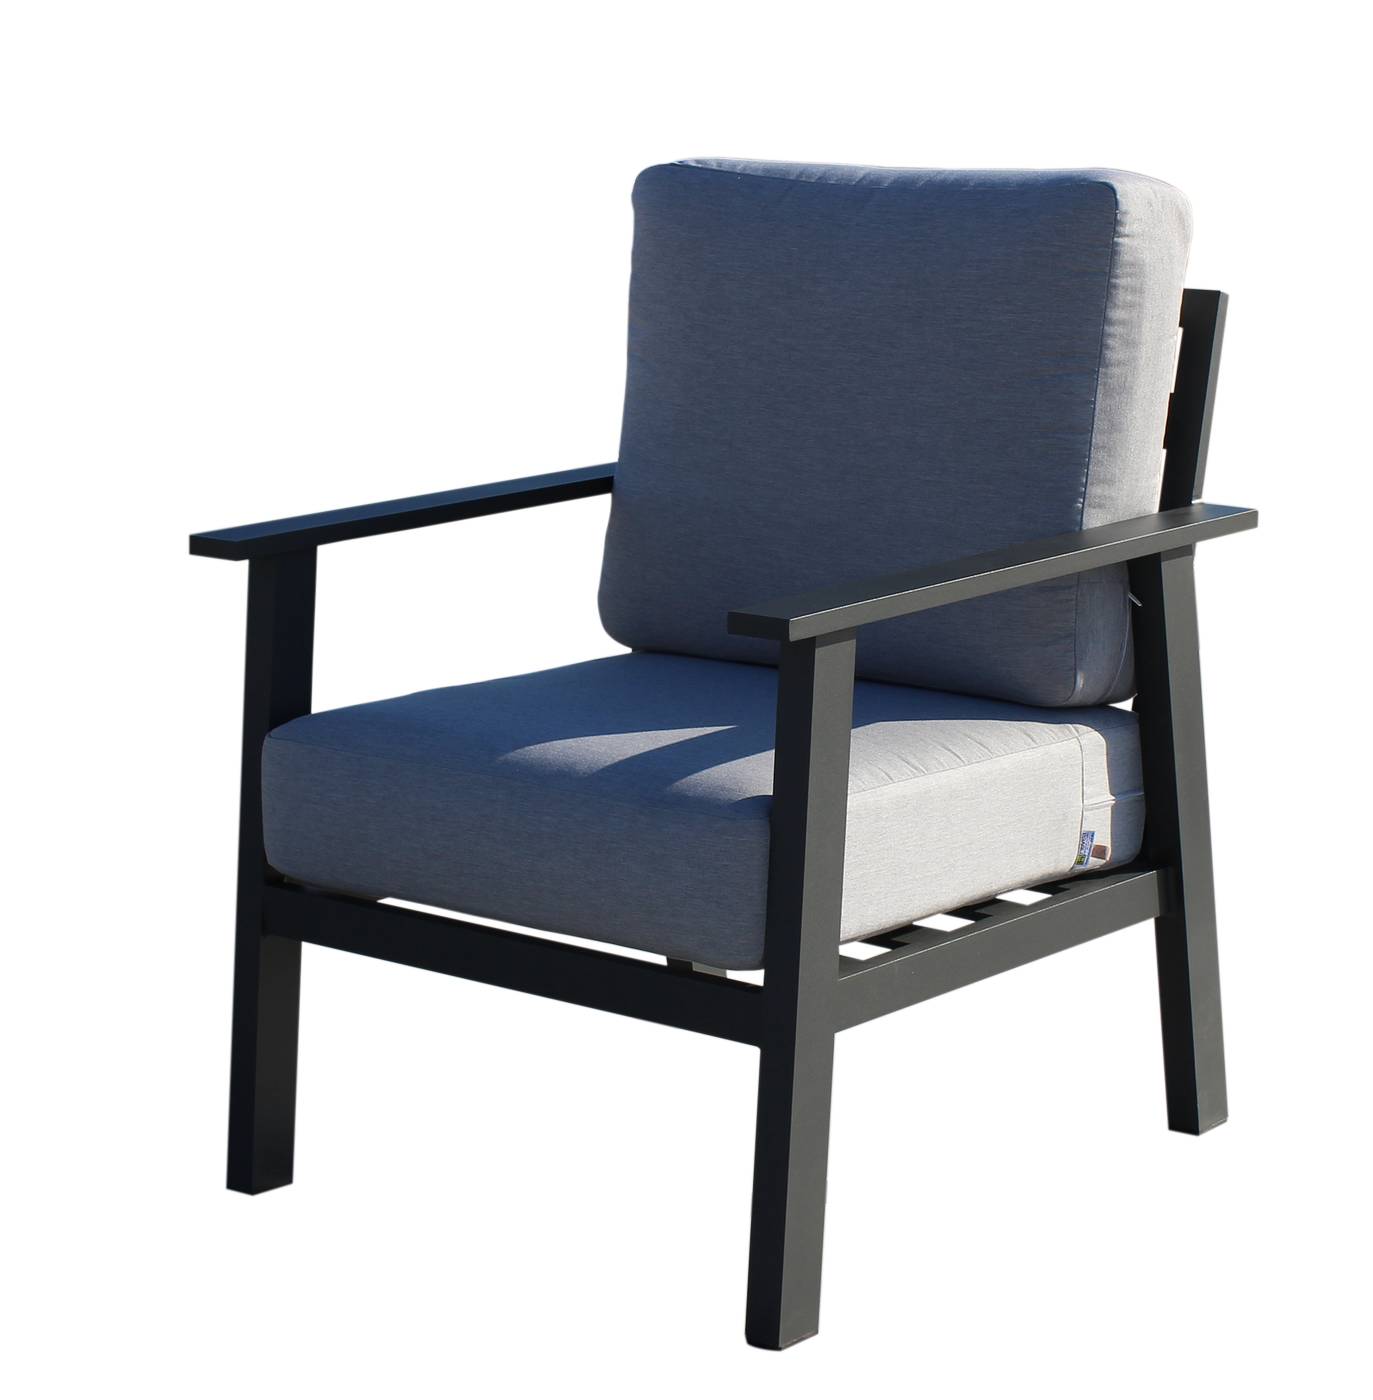 Set Aluminio Eliot-8 - Conjunto aluminio: sofá 3 plazas + 2 sillones + mesa de centro. Fabricado de aluminio en color blanco, antracita, champagne, plata o marrón.